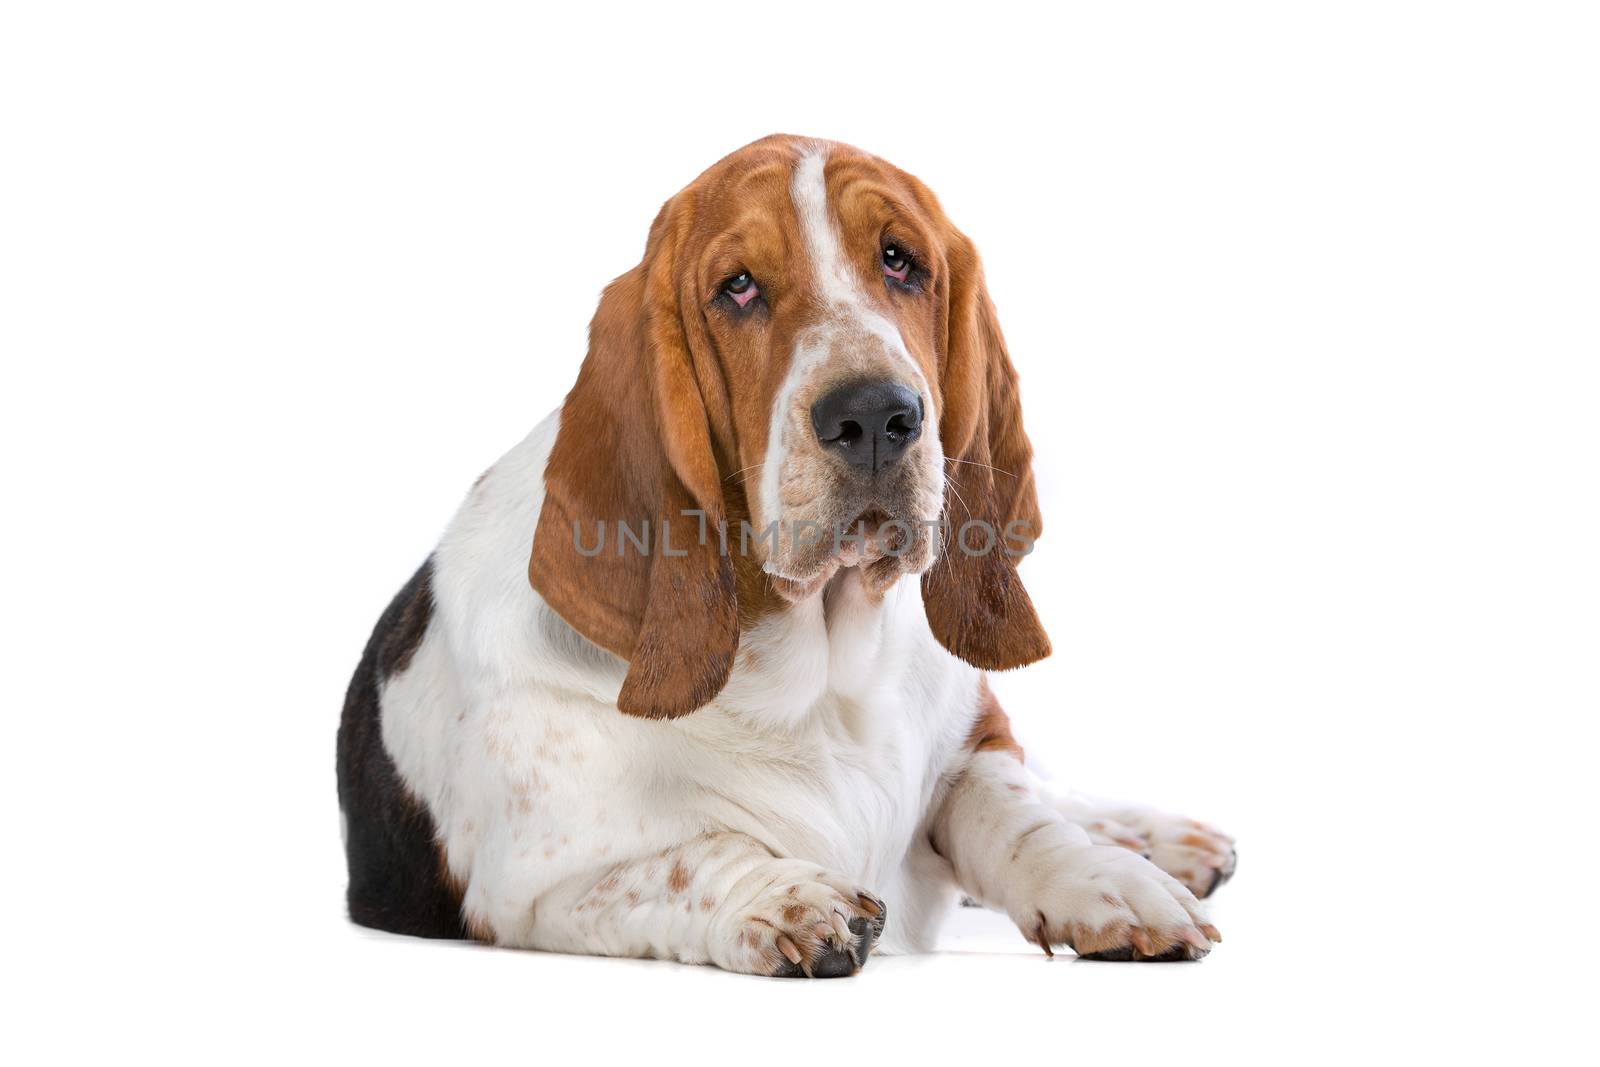 Basset hound by eriklam